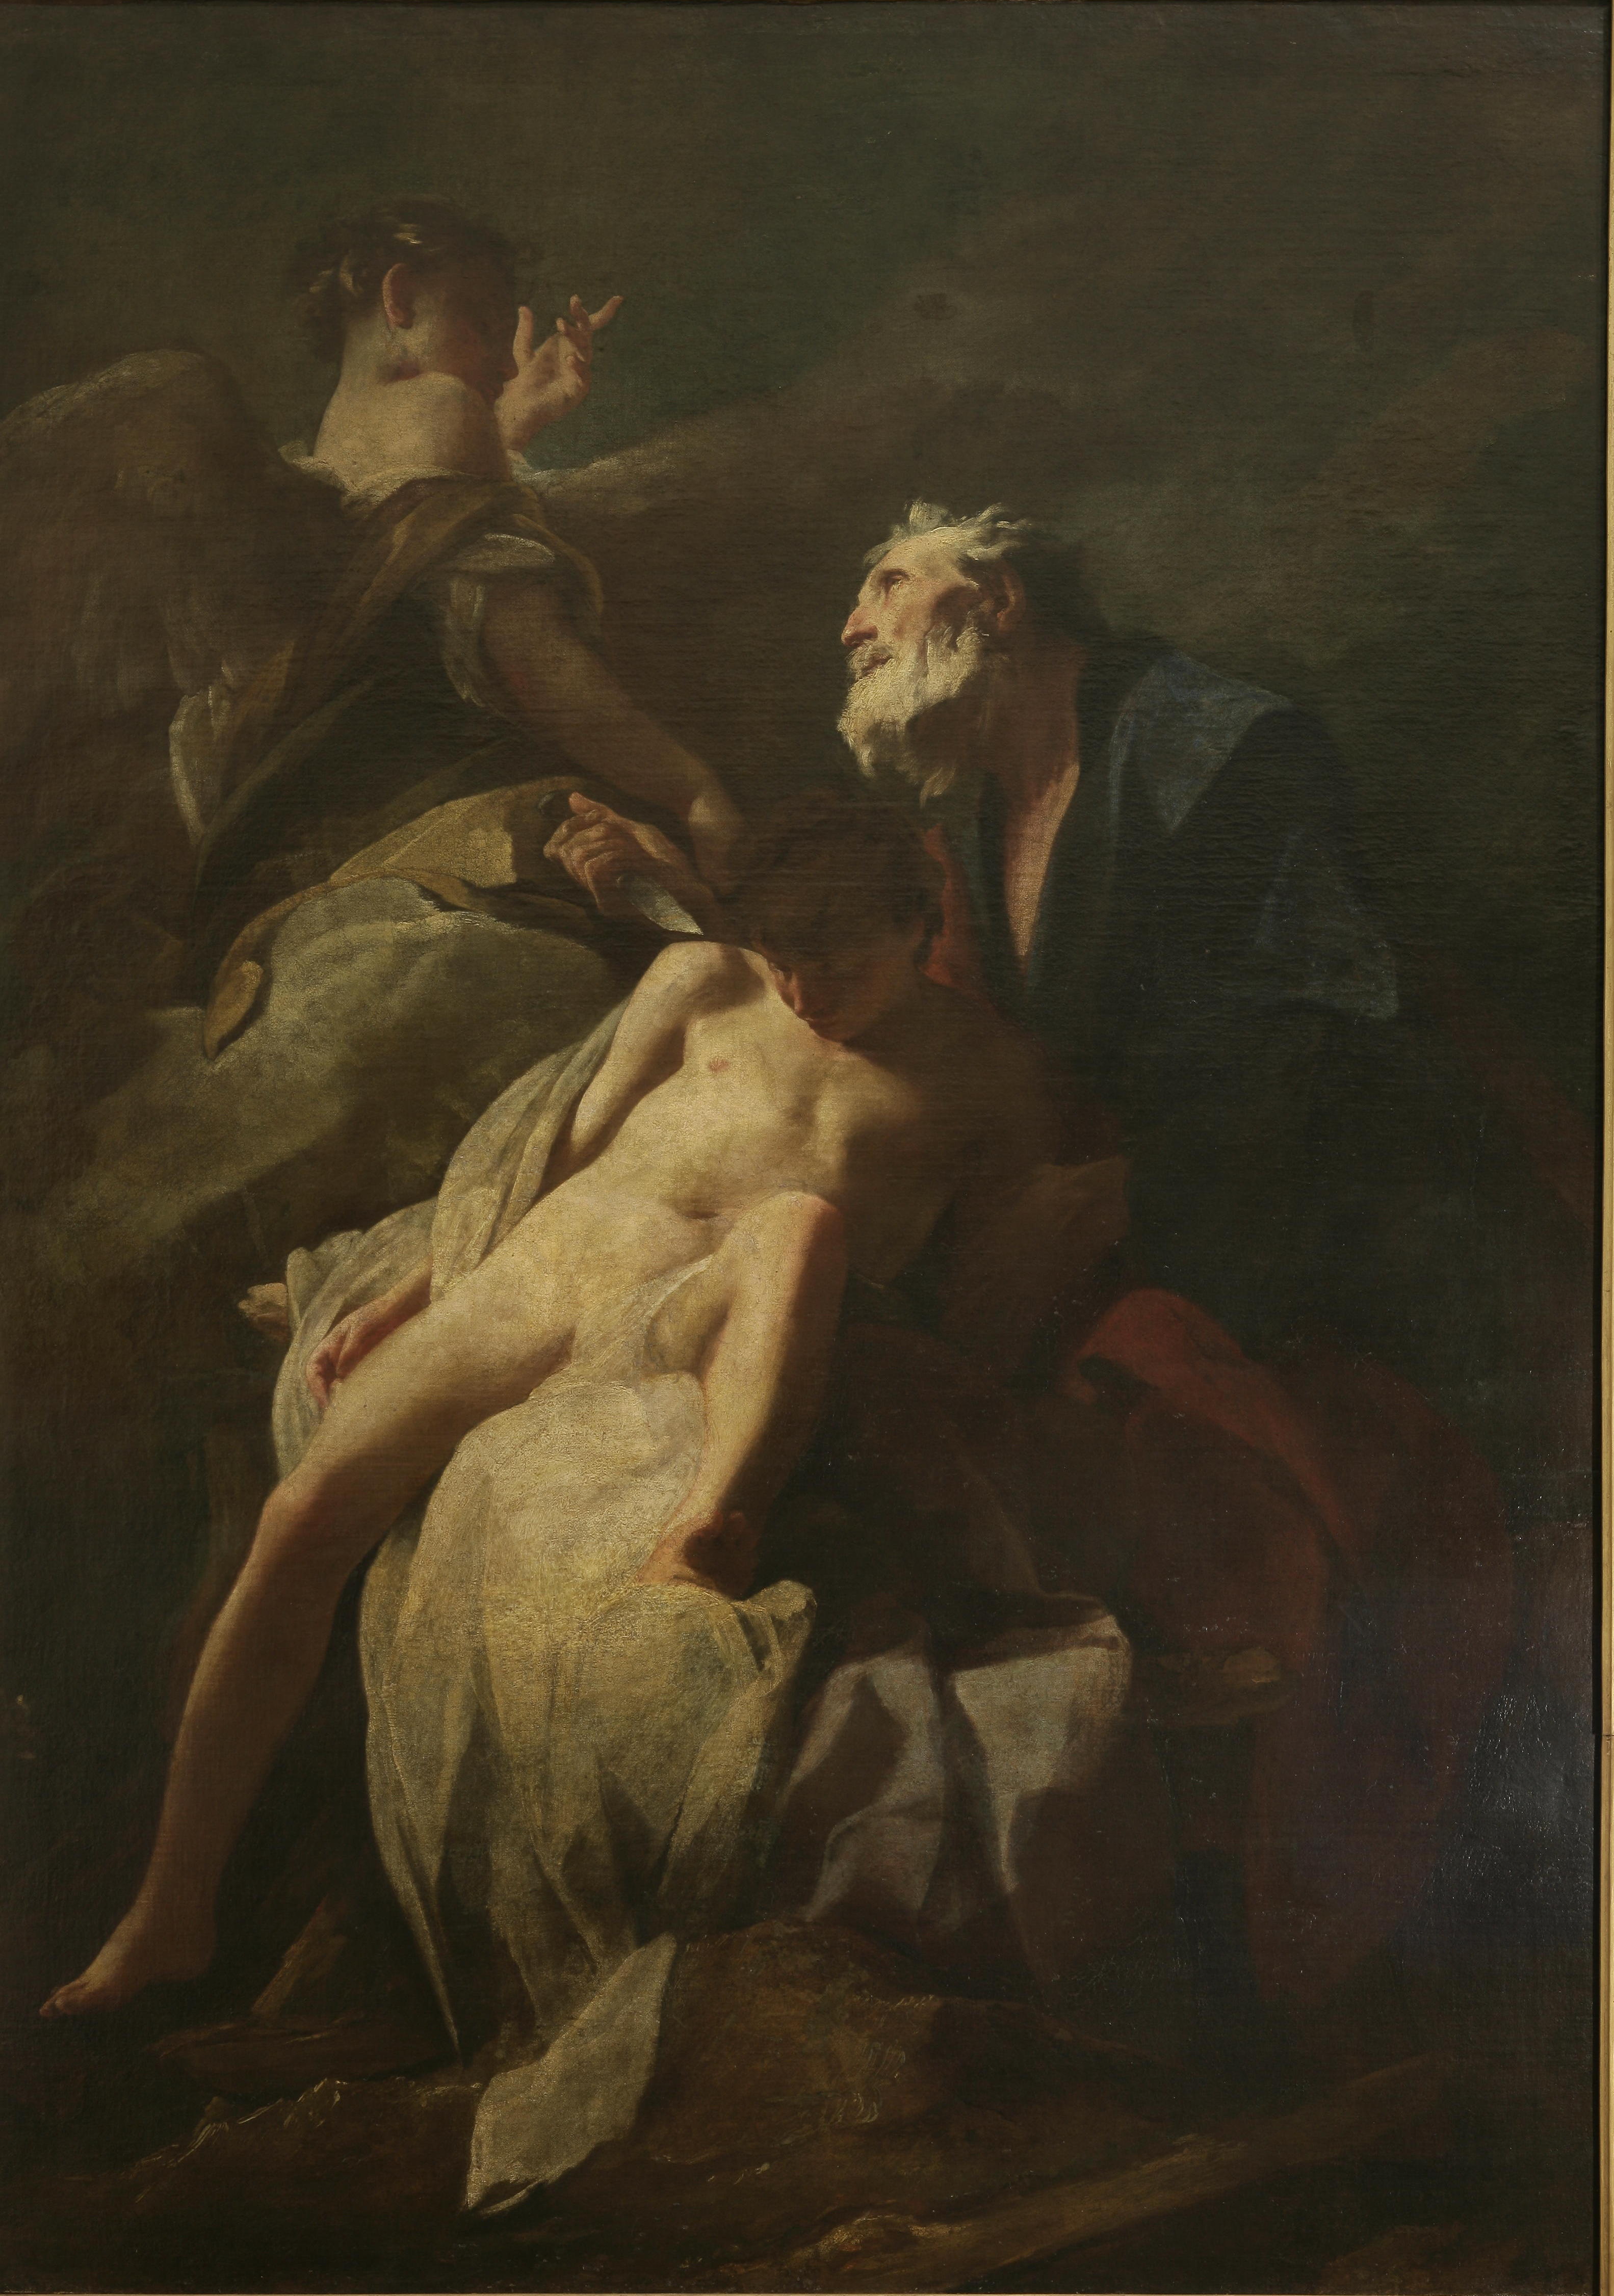 Federico Bencovich: Ábrahám feláldozza Izsákot (1715)<br />Mert ha Ábrahám hajlandósága fia megölésére nem is, de Izsák péniszének látványa már nyilvánvalóan átlépett volna egy bizonyos ingerküszöböt...